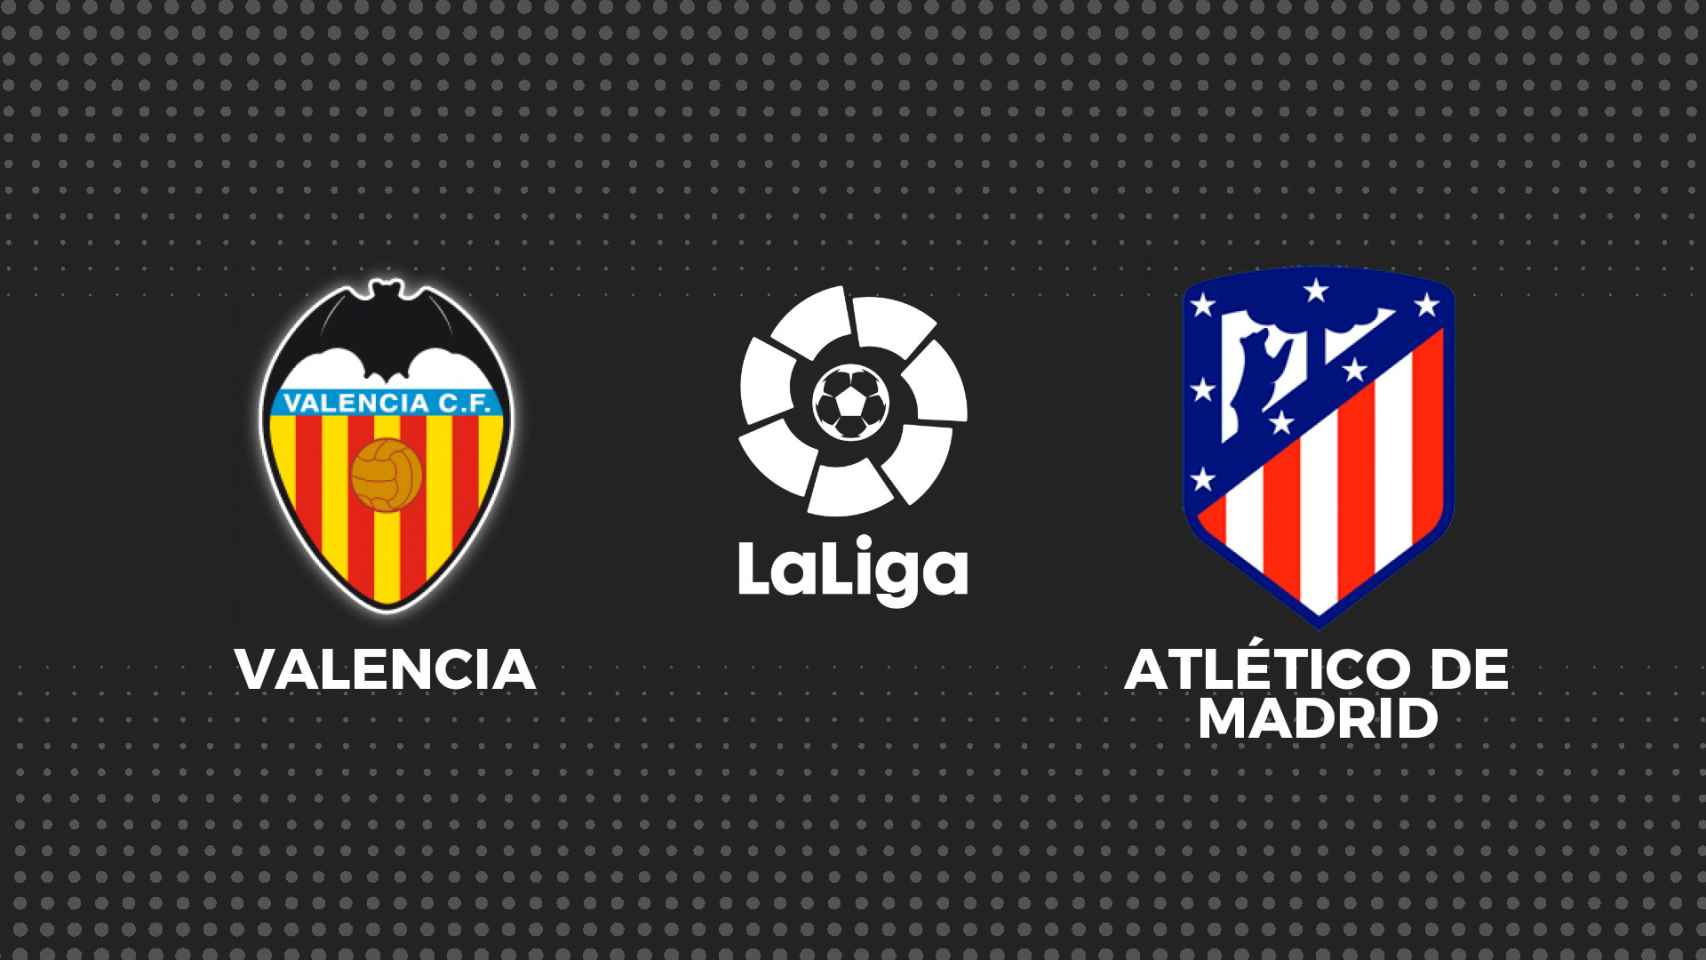 Valencia - Atlético Madrid, fútbol en directo